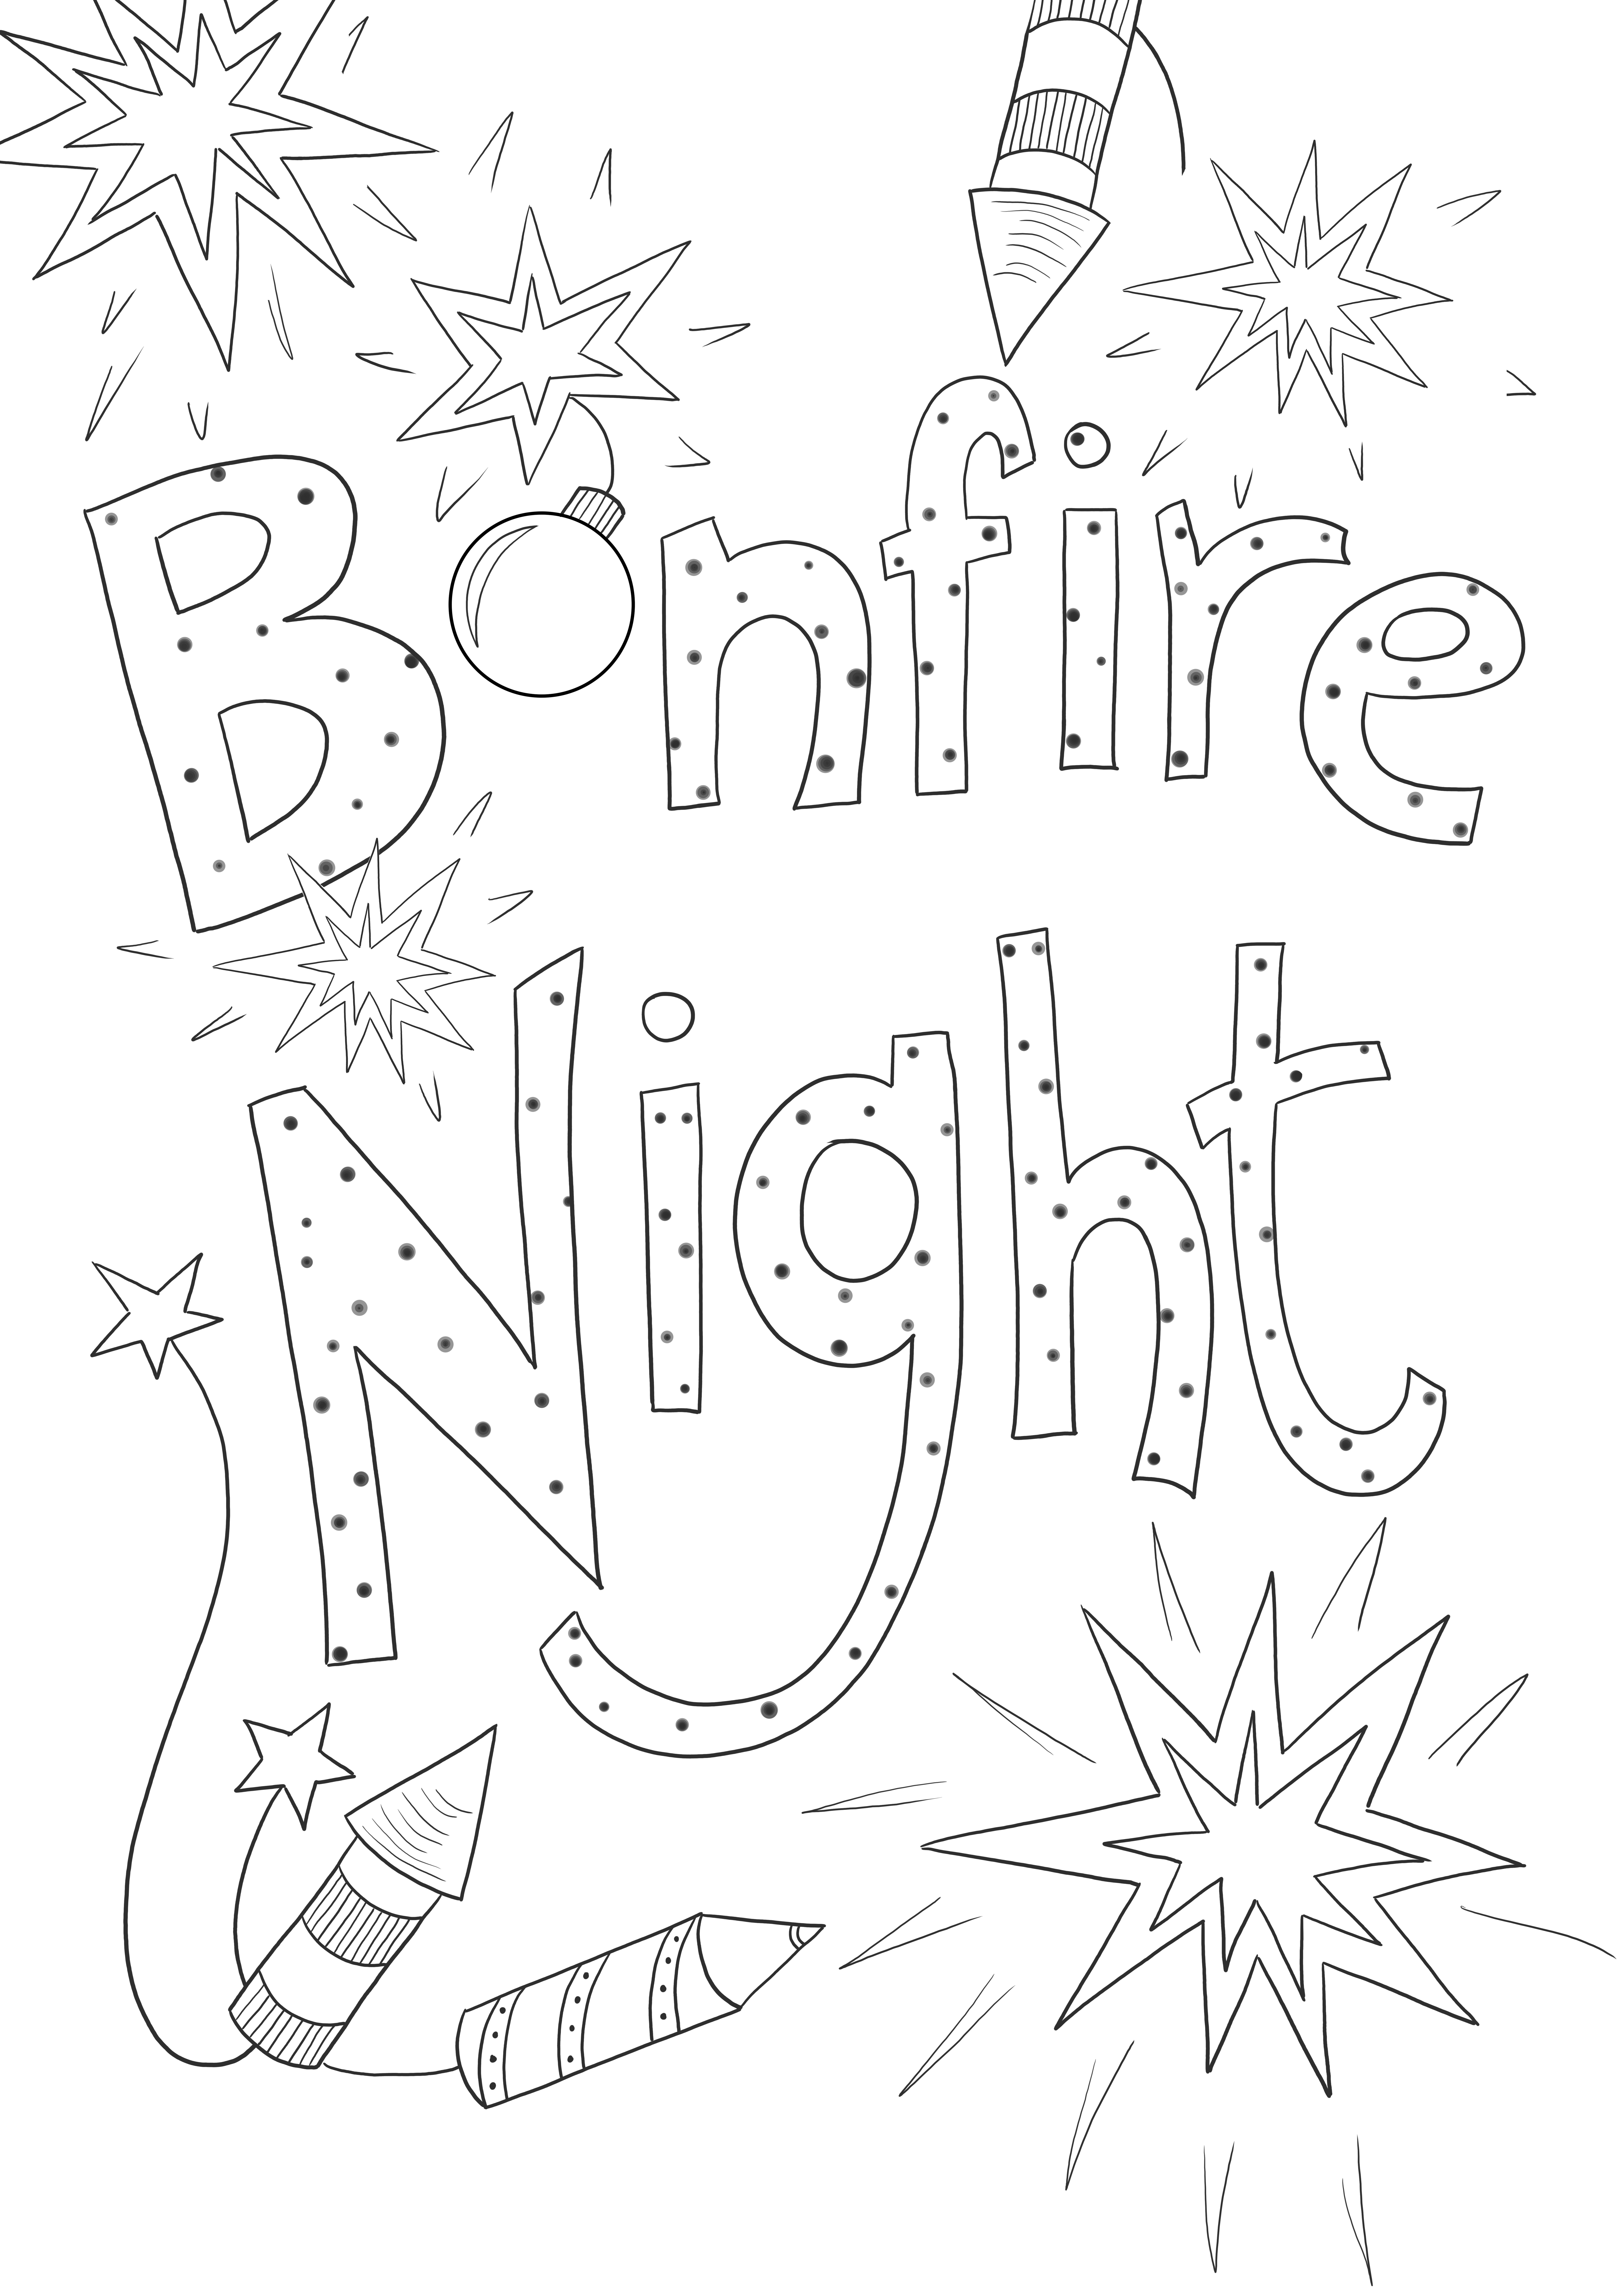 Bonfire Night ingyenes képek és színek nyomtatásához minden korosztály számára